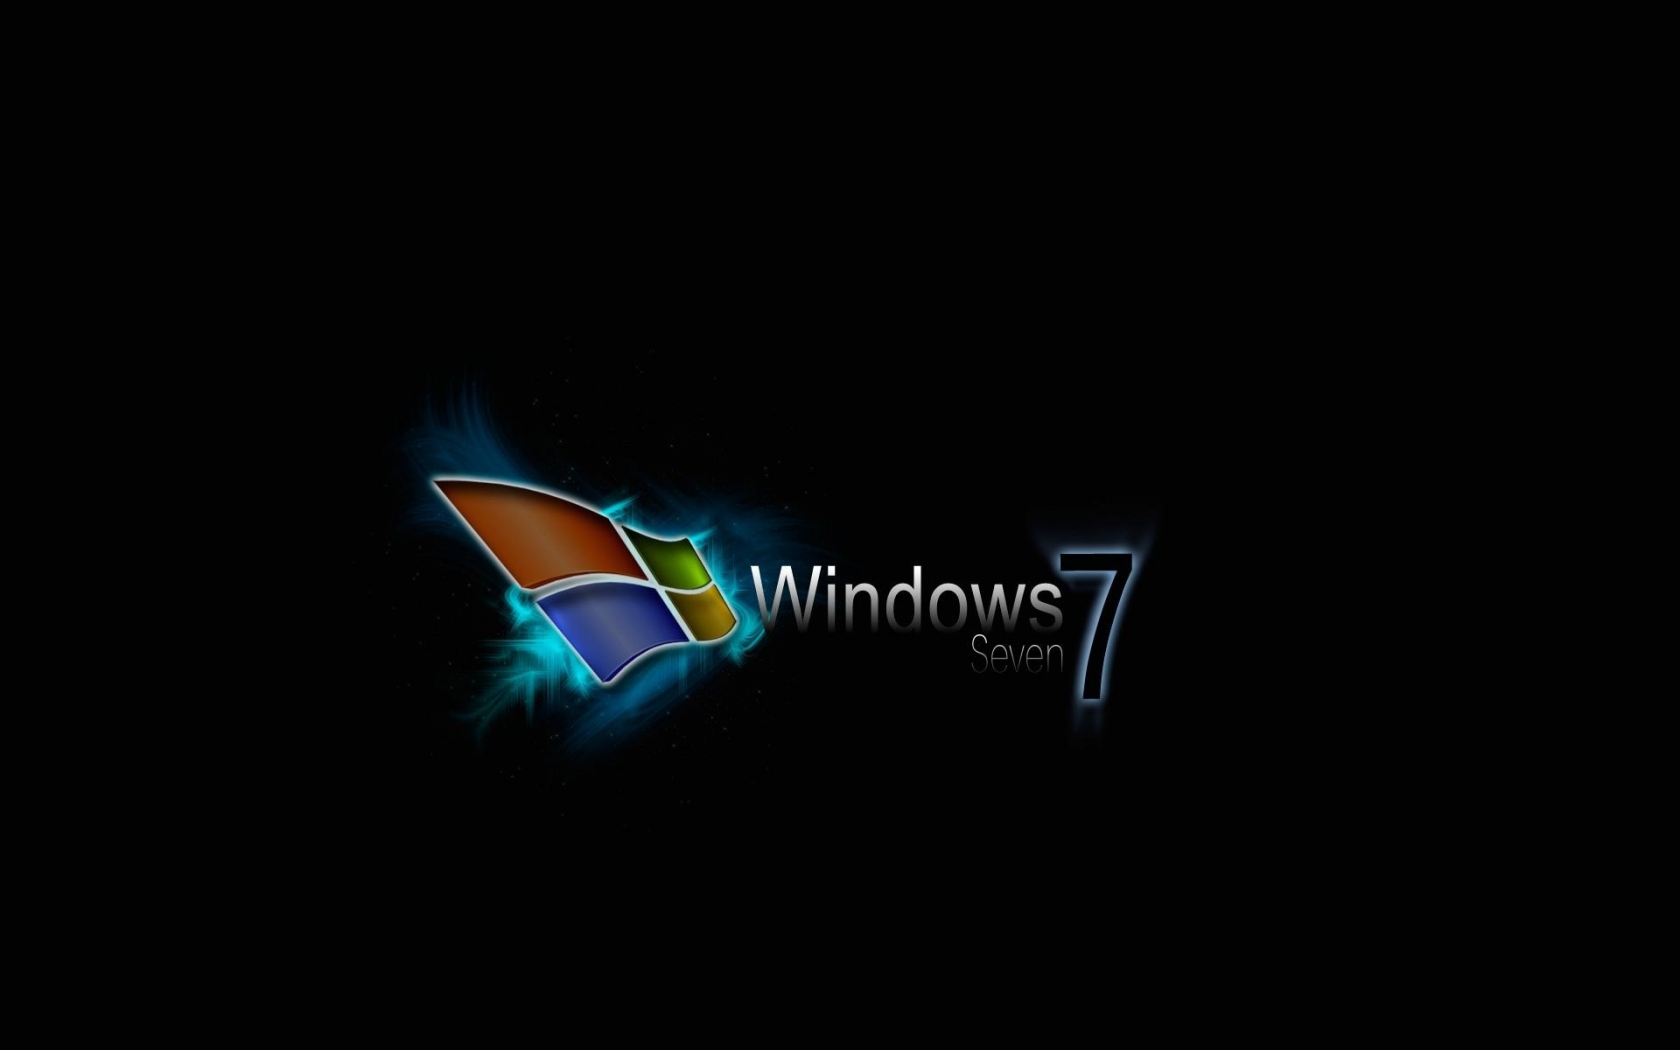 Best Windows 7 for 1680 x 1050 widescreen resolution